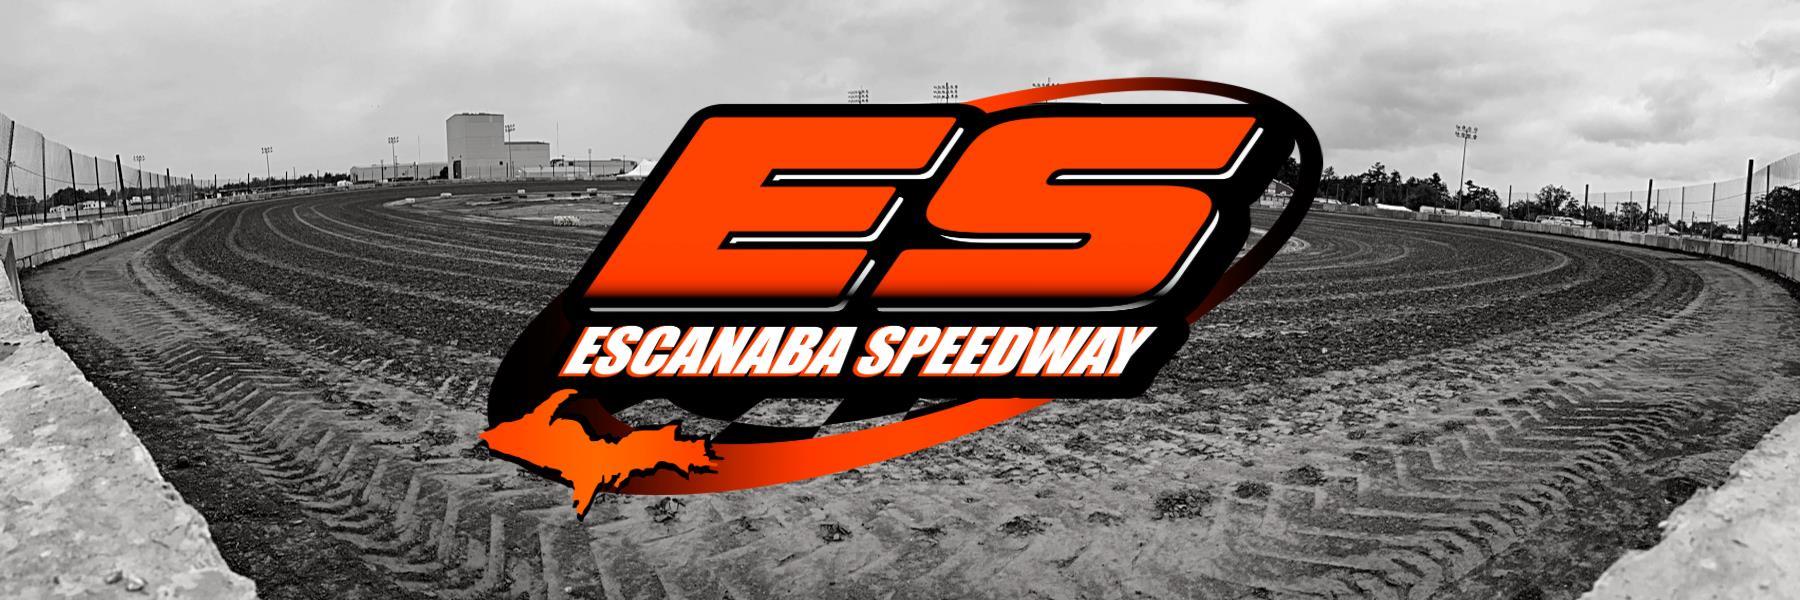 7/14/2018 - Escanaba Speedway